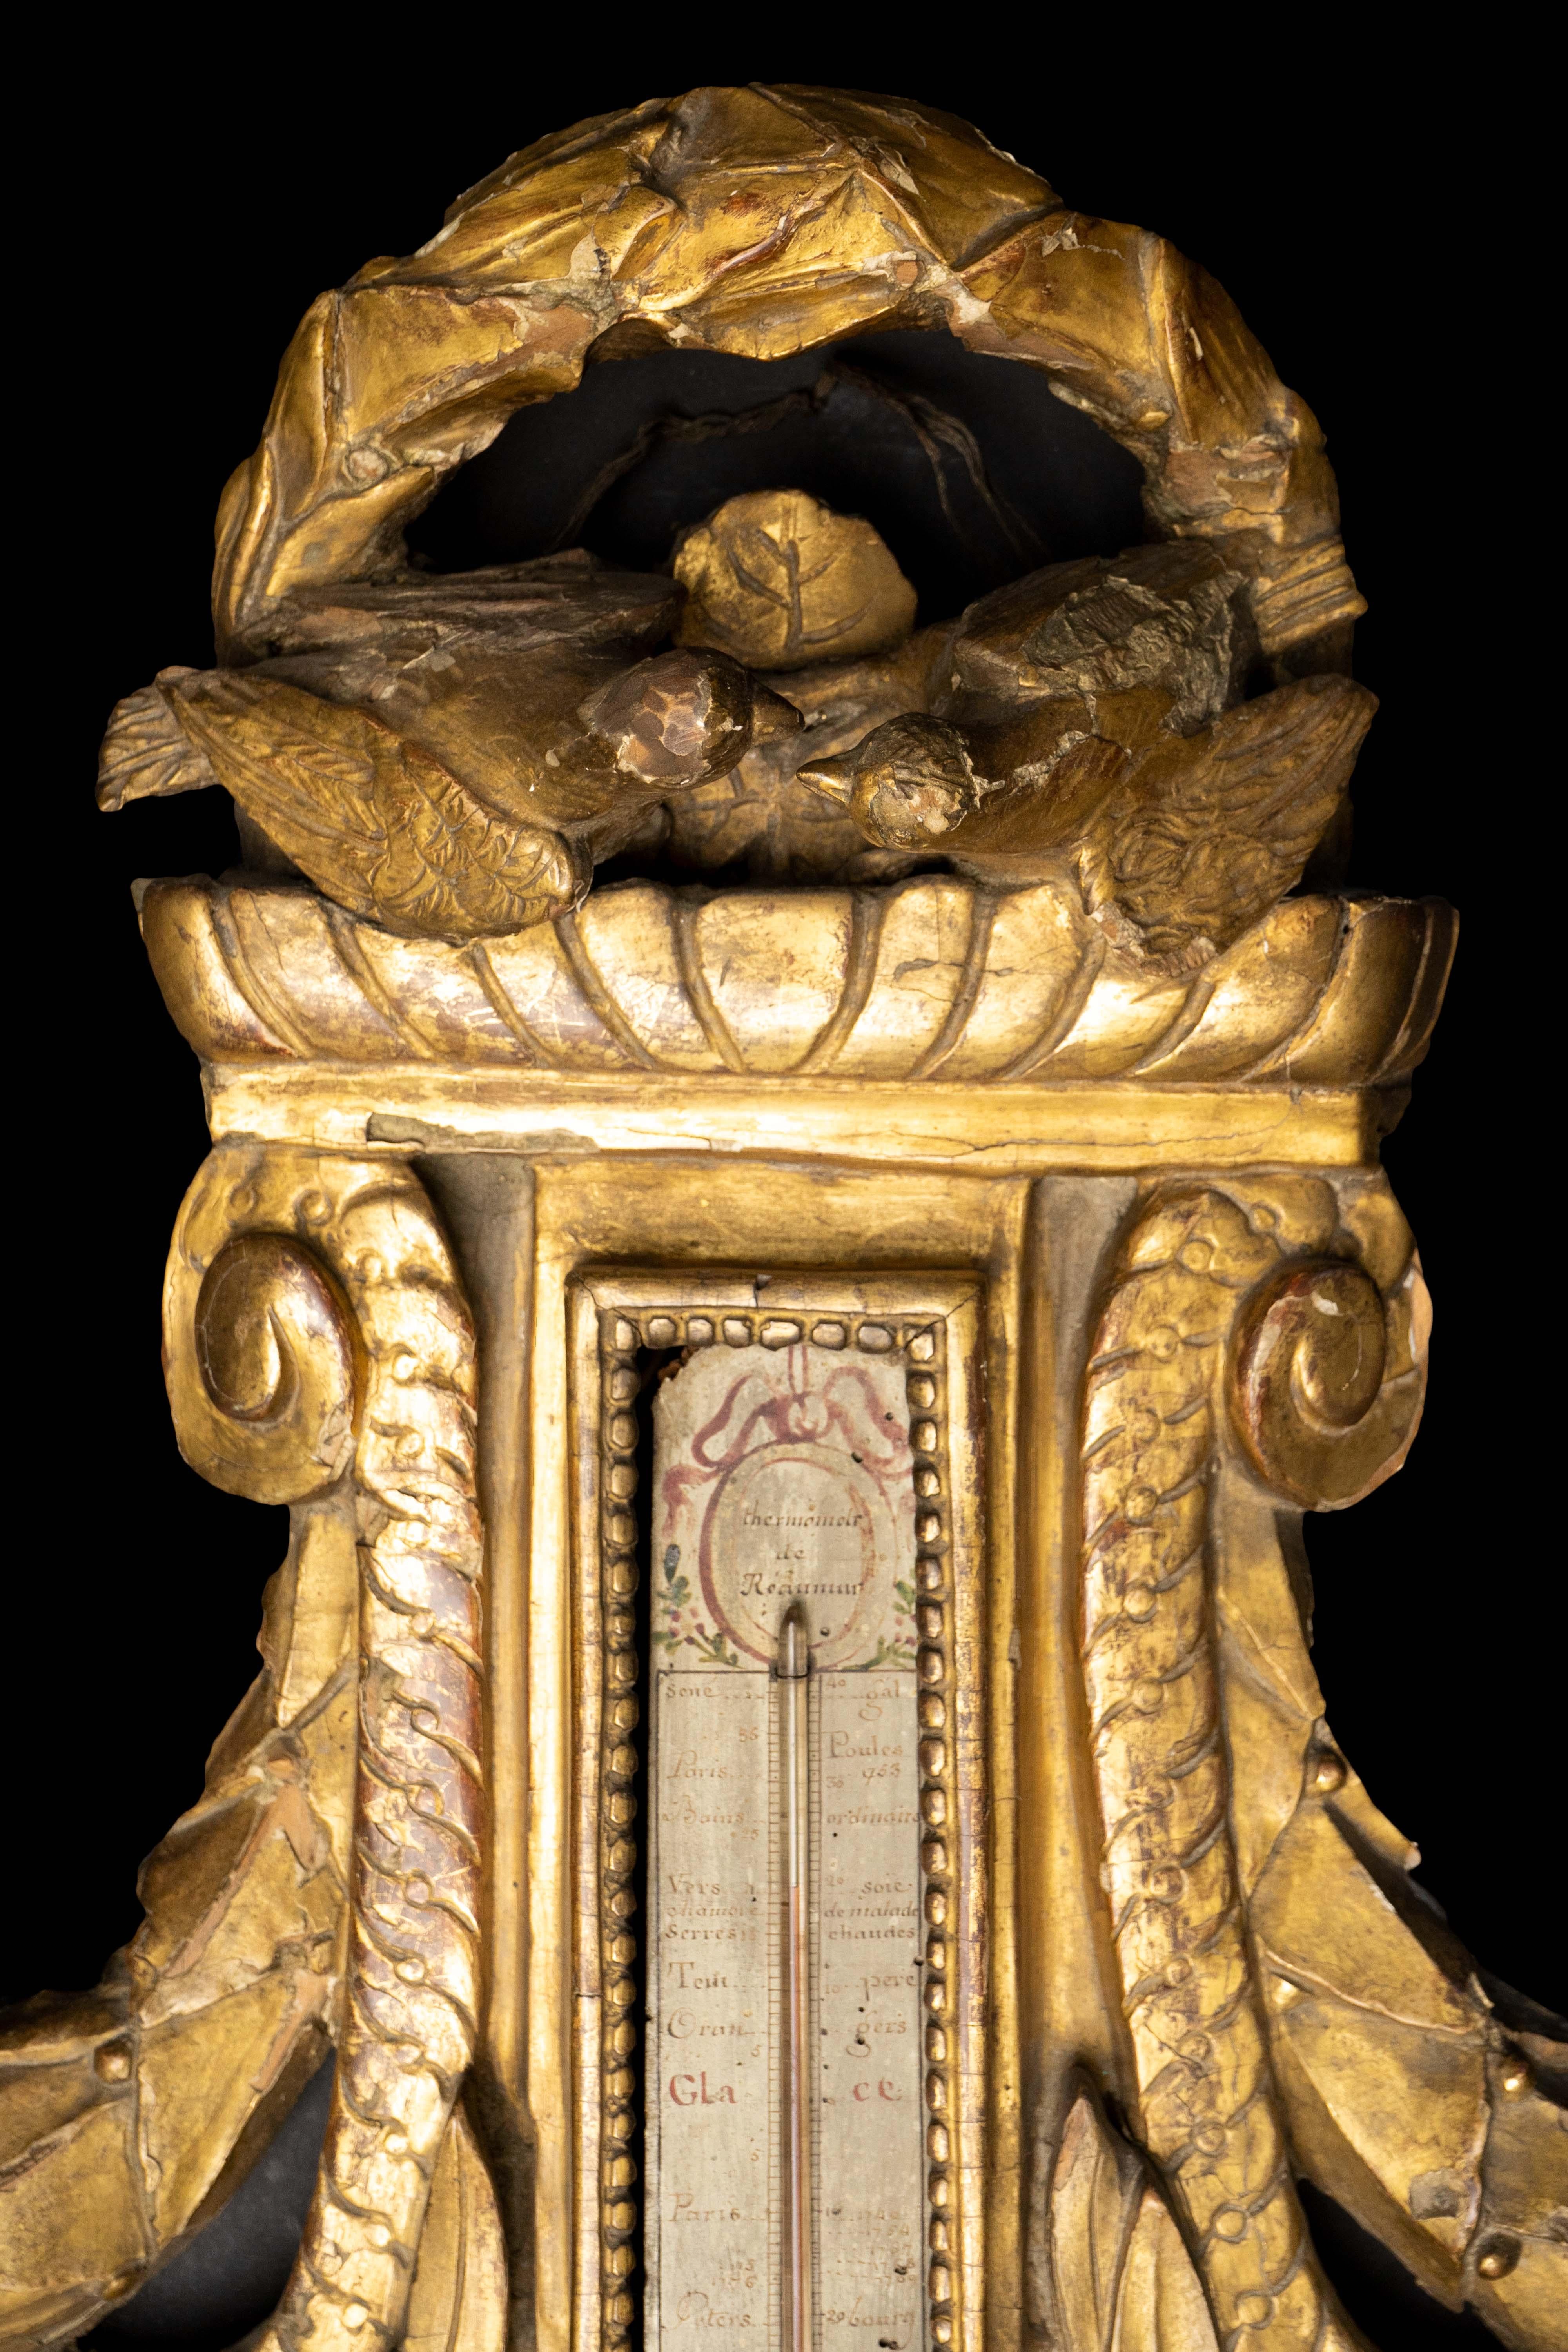 18th century barometer